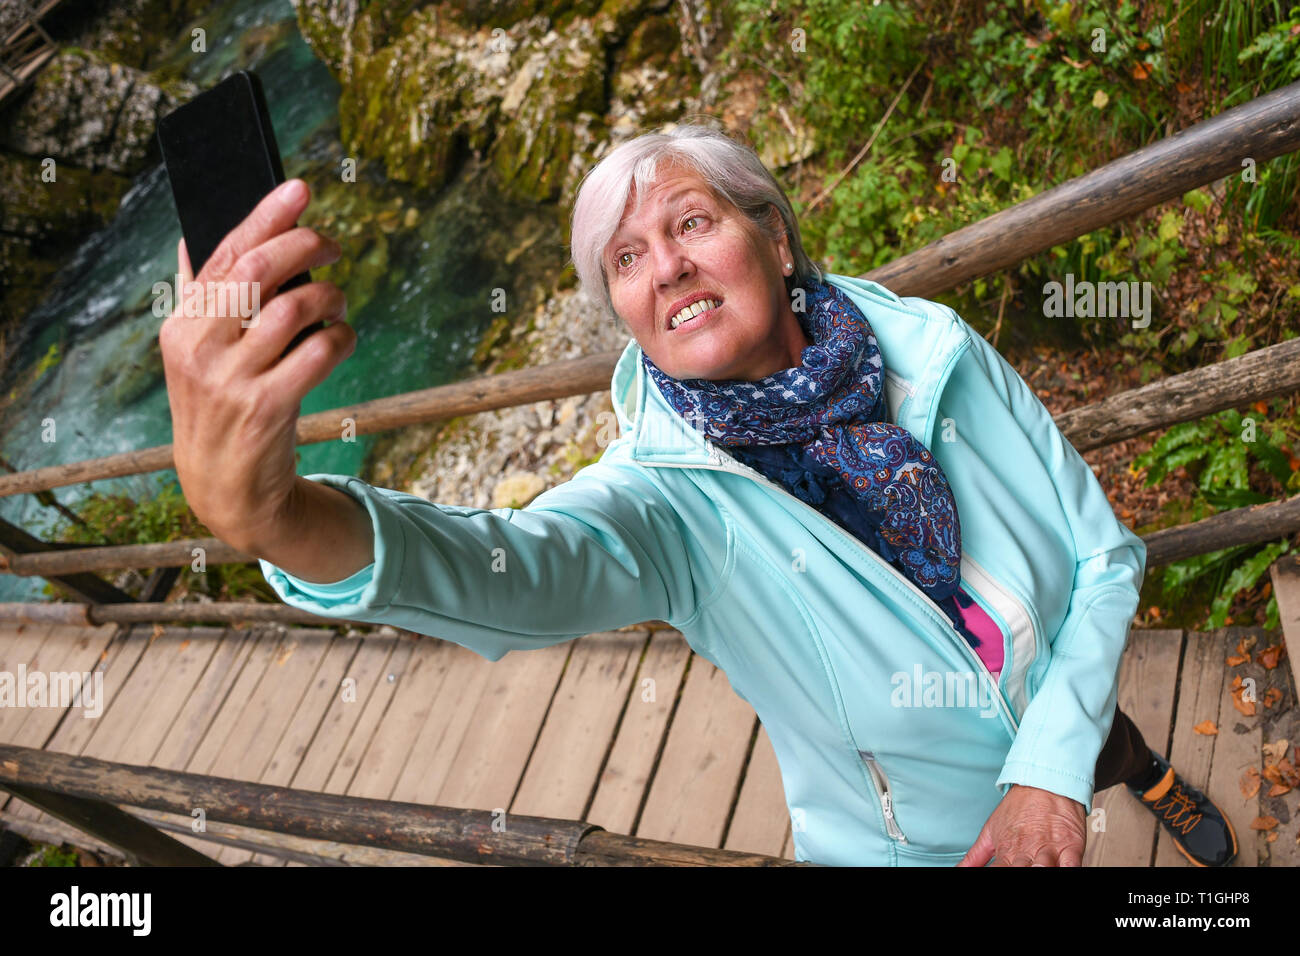 Schöne attraktive ältere, reife Frau mit glänzenden grauen Haaren fotografieren und selfies Outdoor in einer Schlucht Vintgar River Canyon Schlucht an einem sonnigen Tag Stockfoto